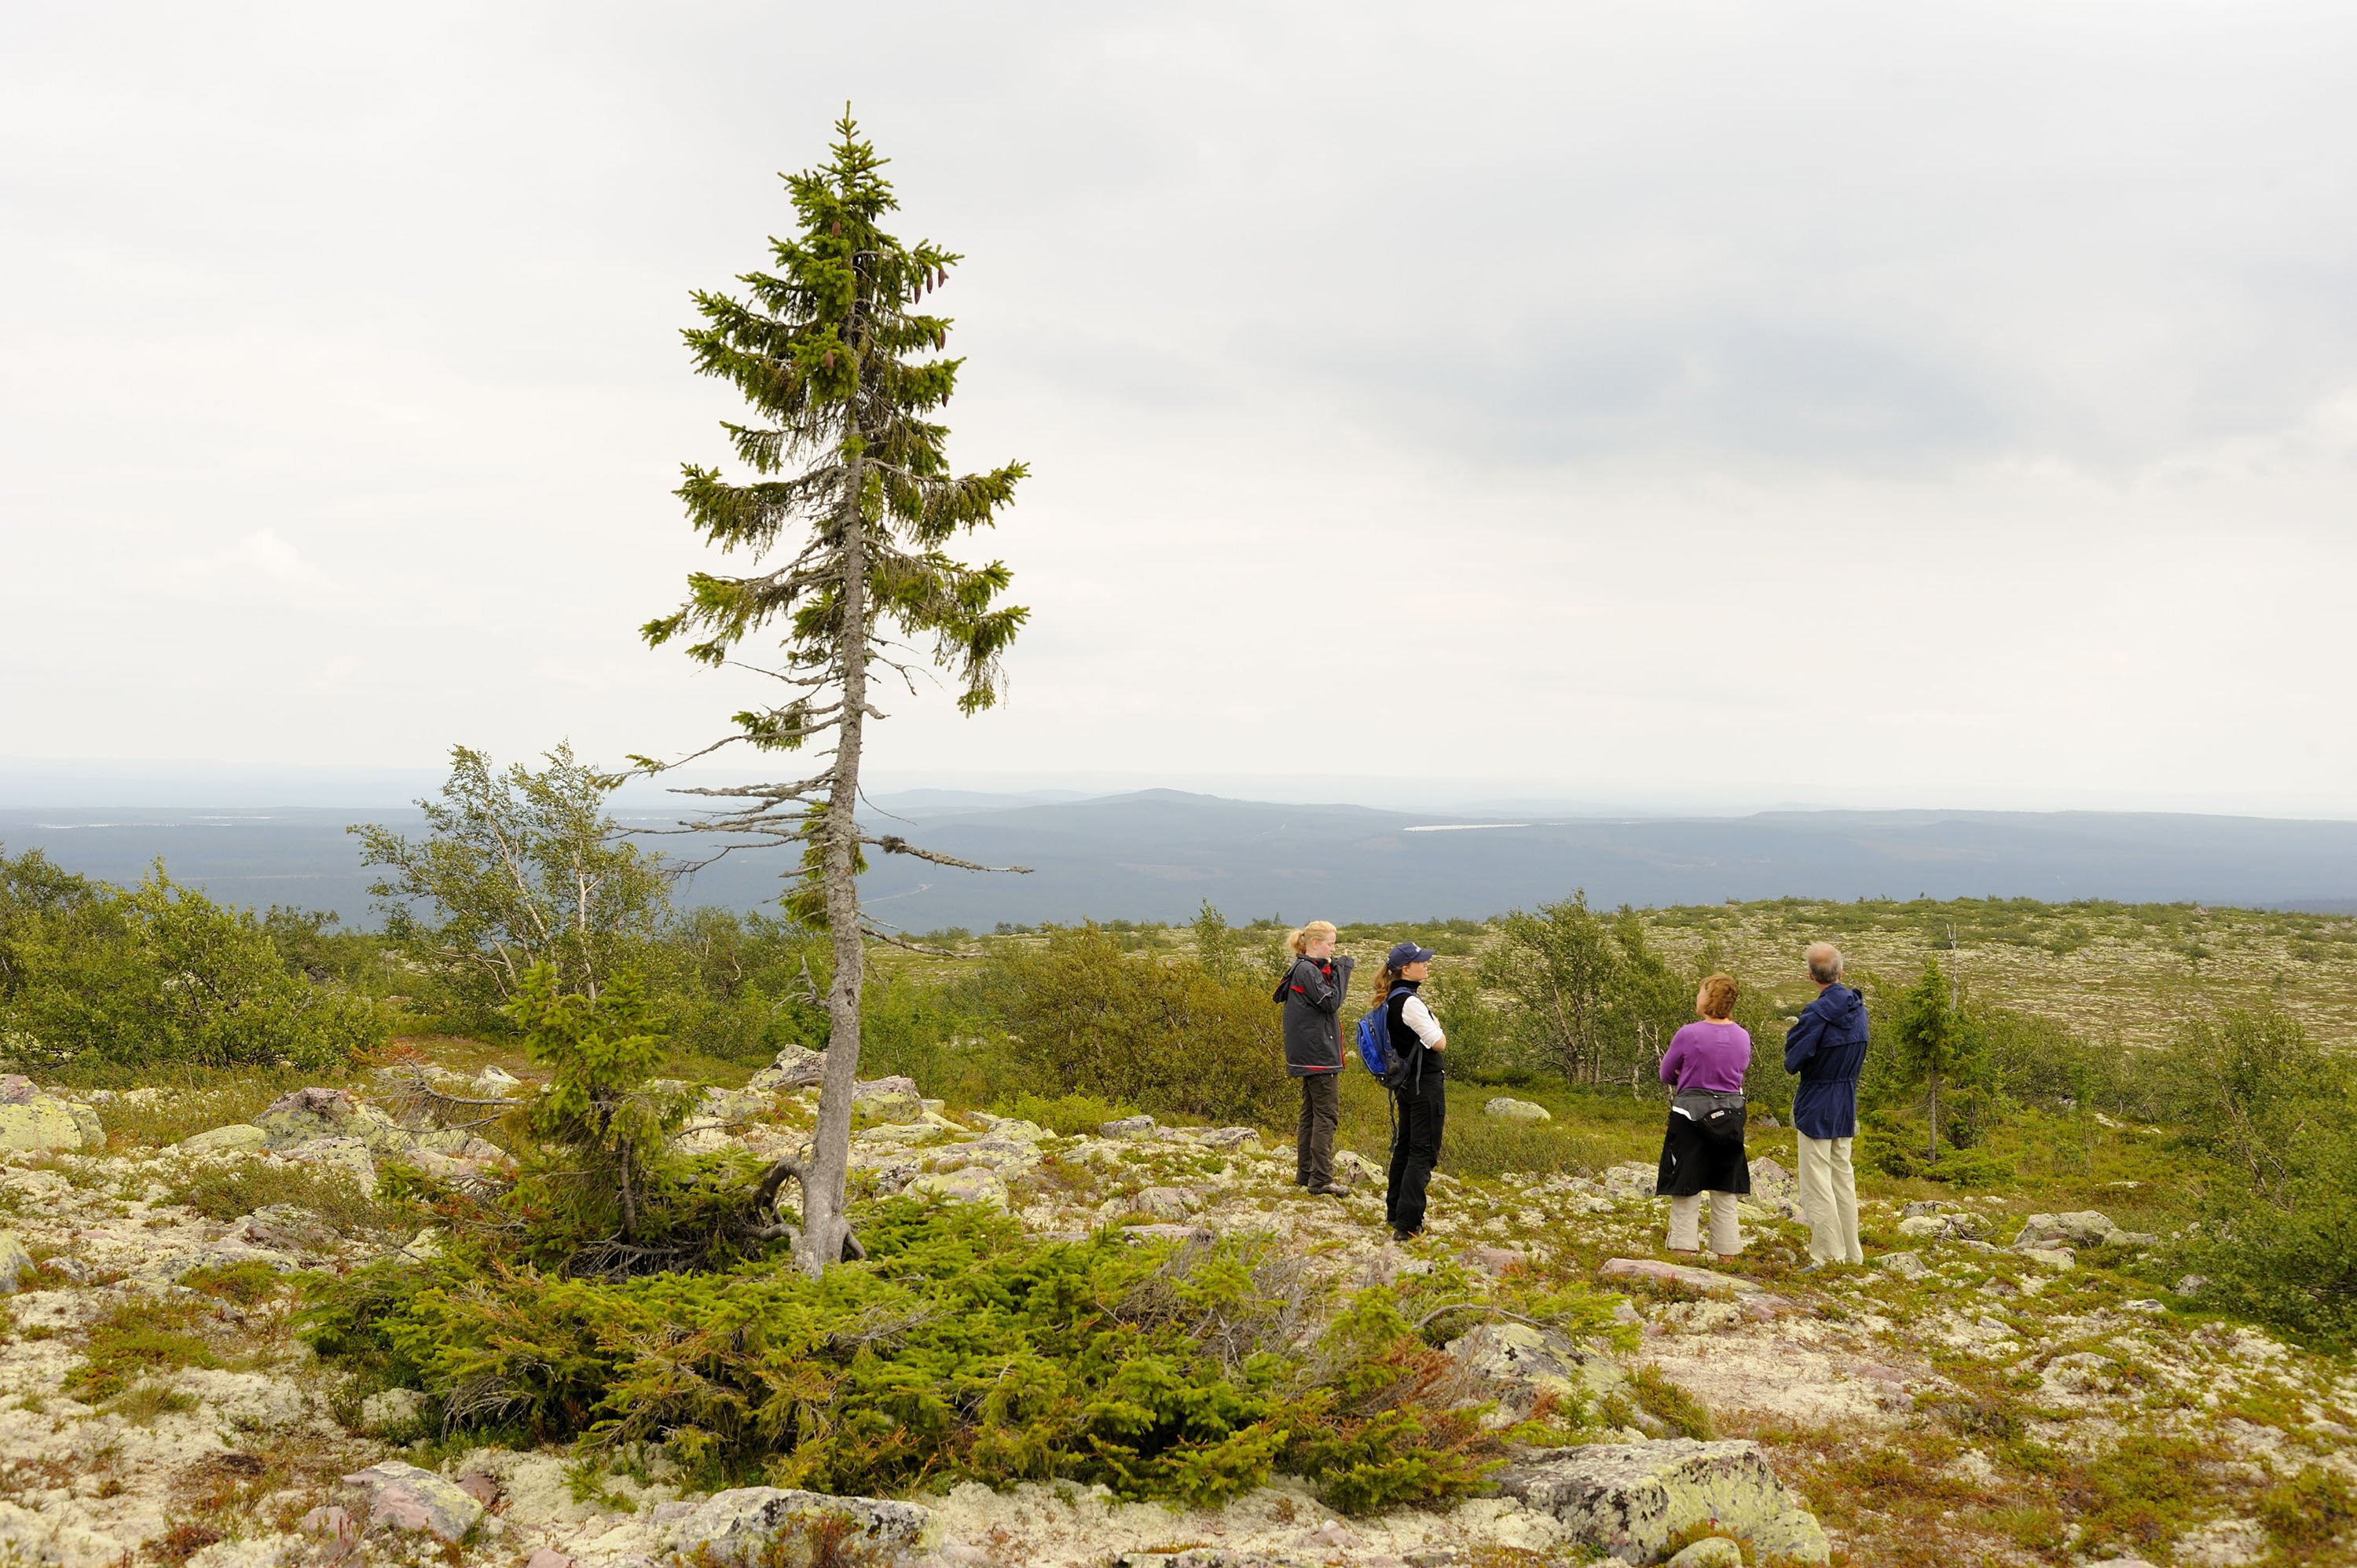 Världens äldsta träd, Old Tjikko i Fulufjällets nationalpark.